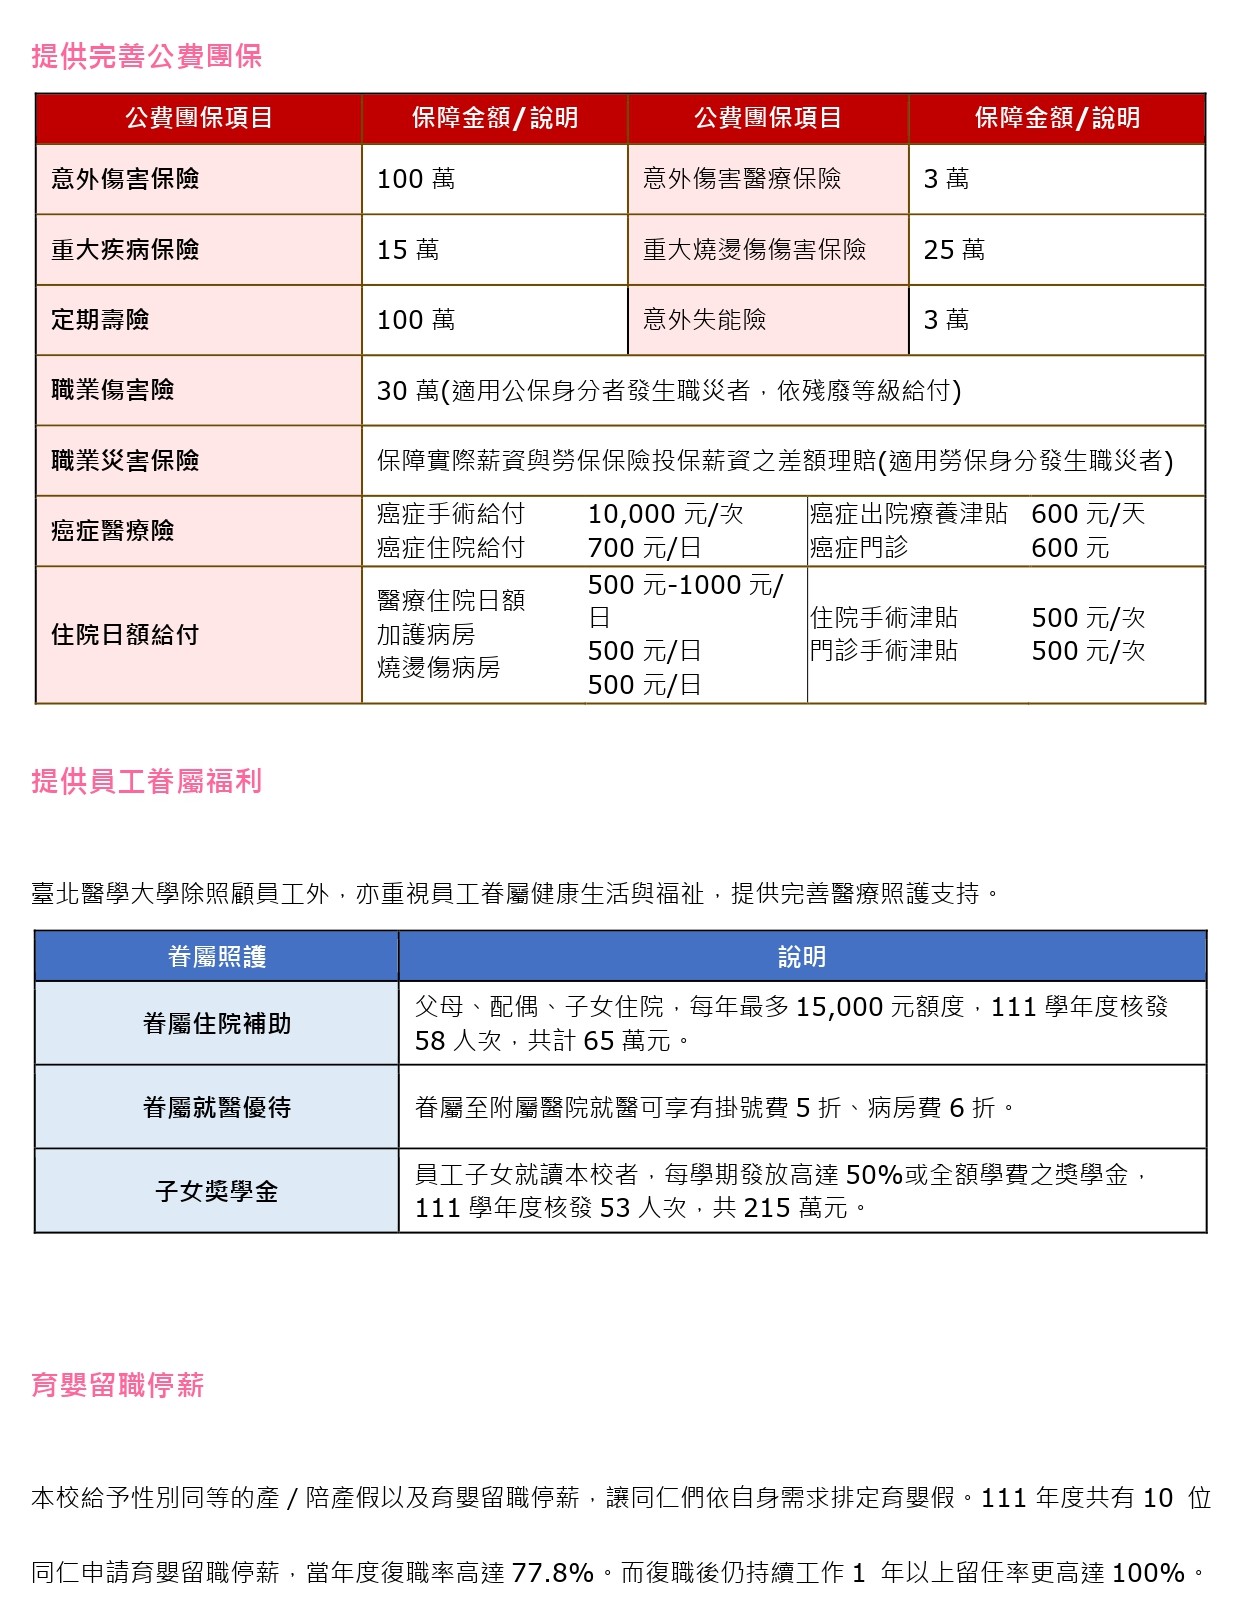 薪资及多元福利制度-for 网页- (中文) New_page-0003